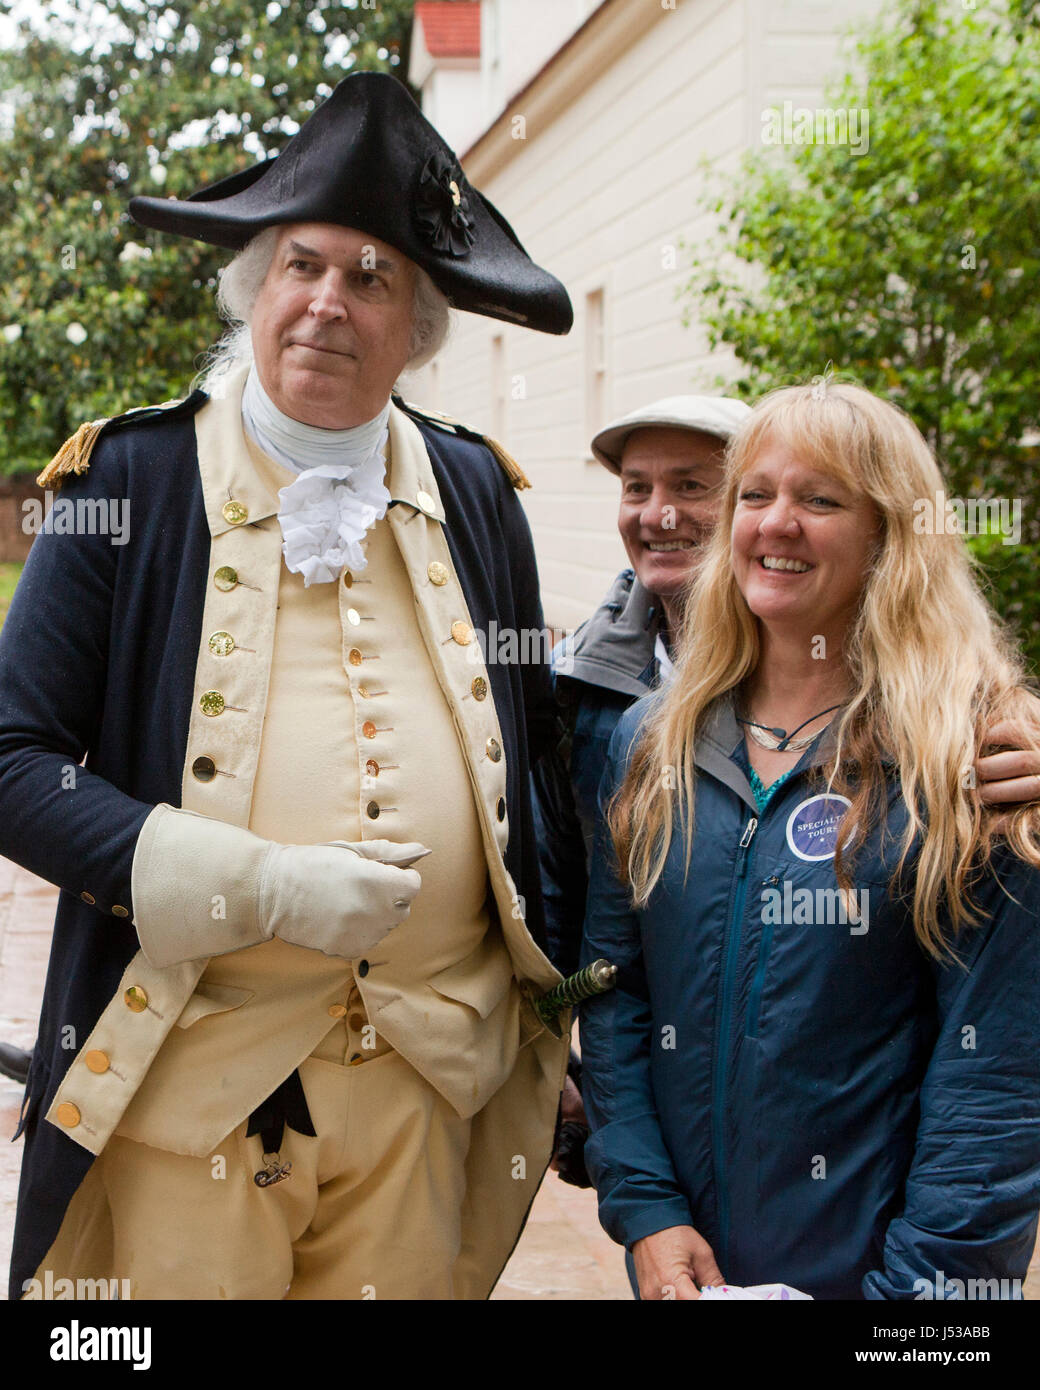 George Washington la reconstitution médiévale (doyen Malissa) qui pose pour photo avec les visiteurs au Mont Vernon, Virginia USA Banque D'Images